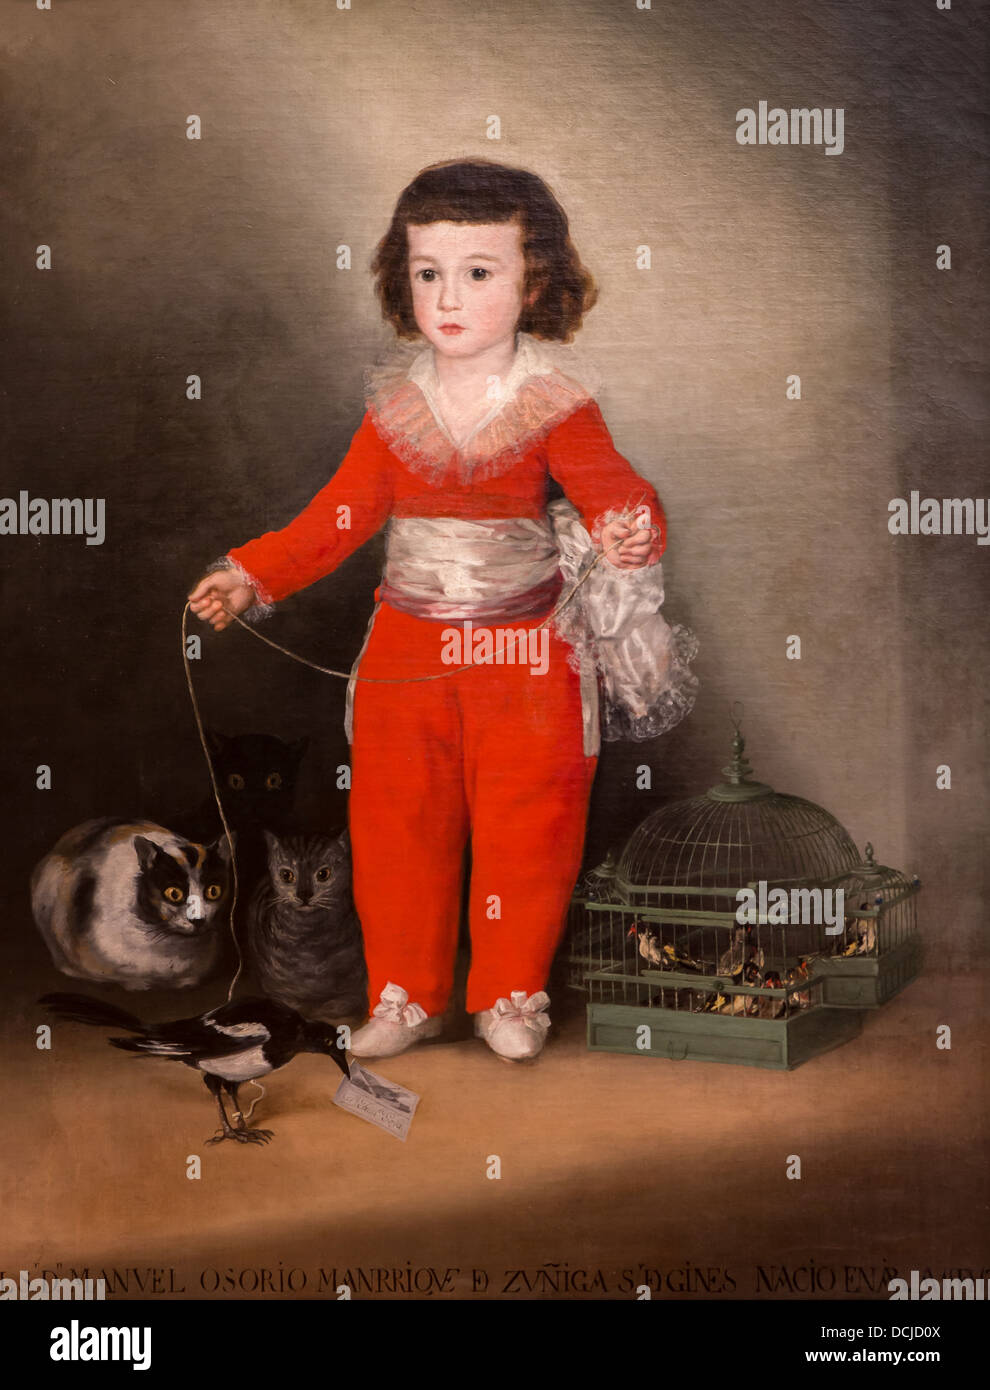 18e siècle - Manuel Osorto Manrique de Zuniga, 1787 - Goya Philippe Sauvan-Magnet / Active Museum Banque D'Images